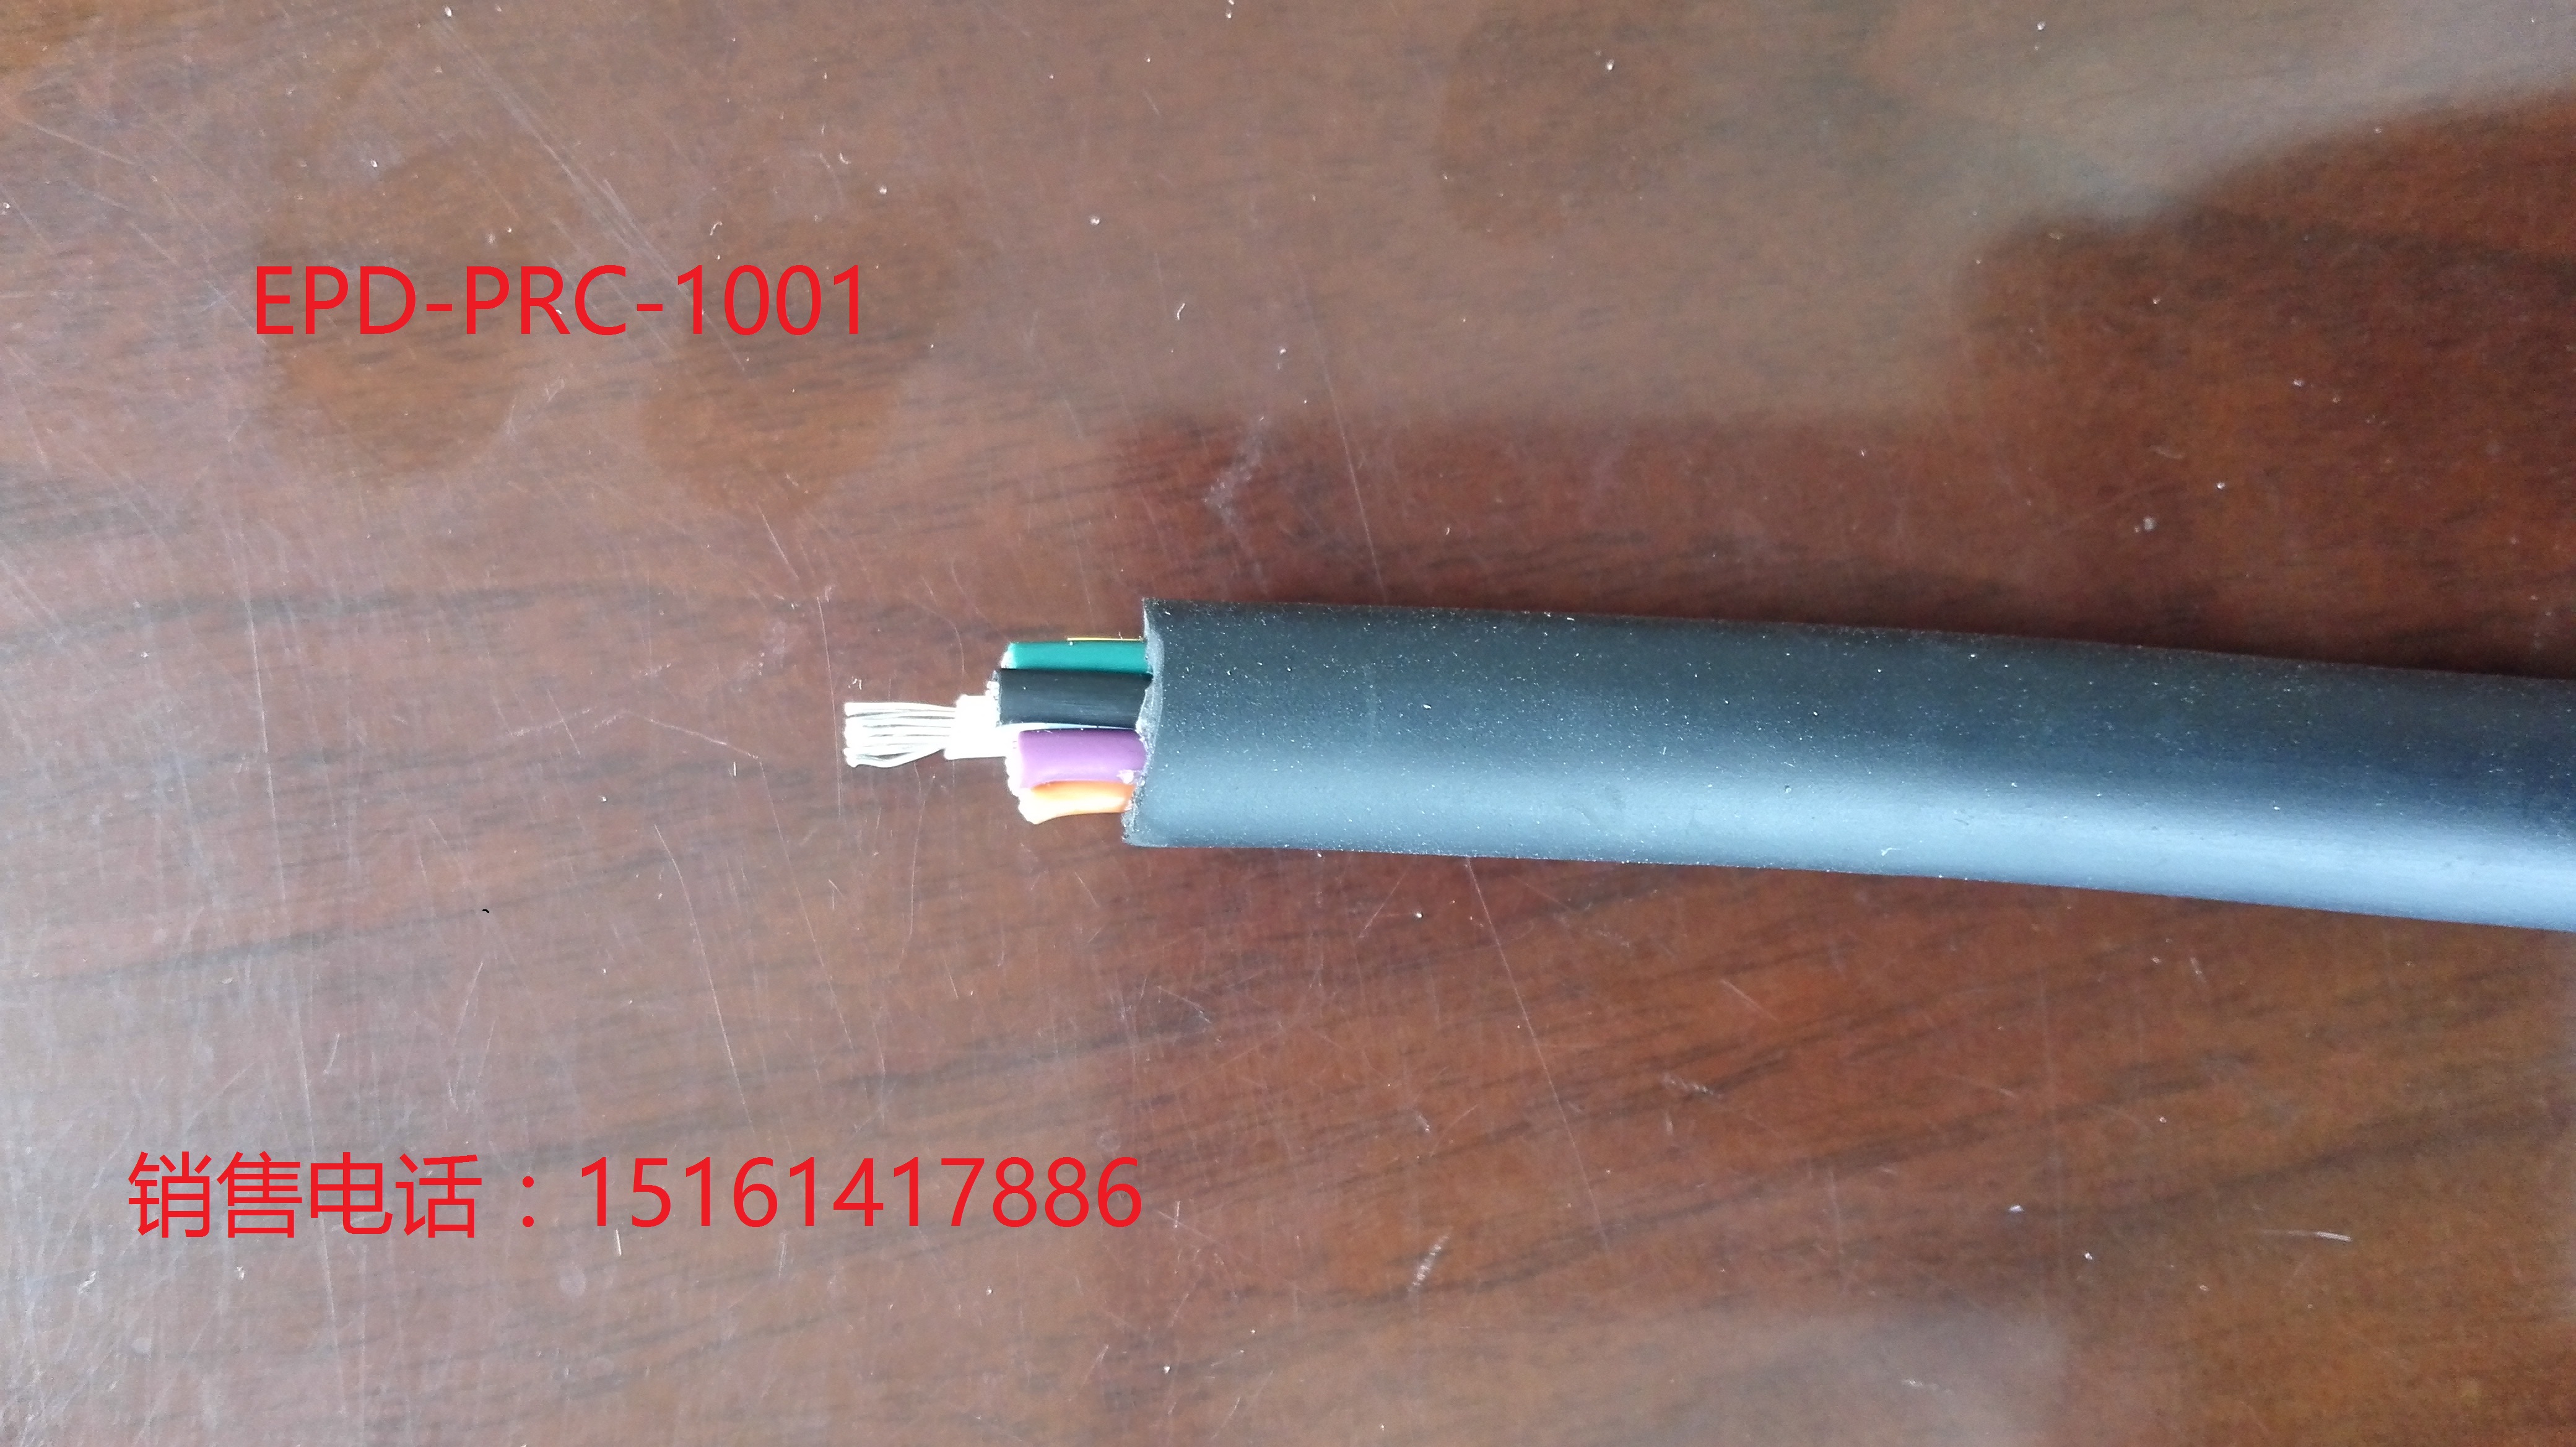 执行标准 Q/3210HL24- EPD-PRC-1001 特种电缆EPD-PRC-1001图片